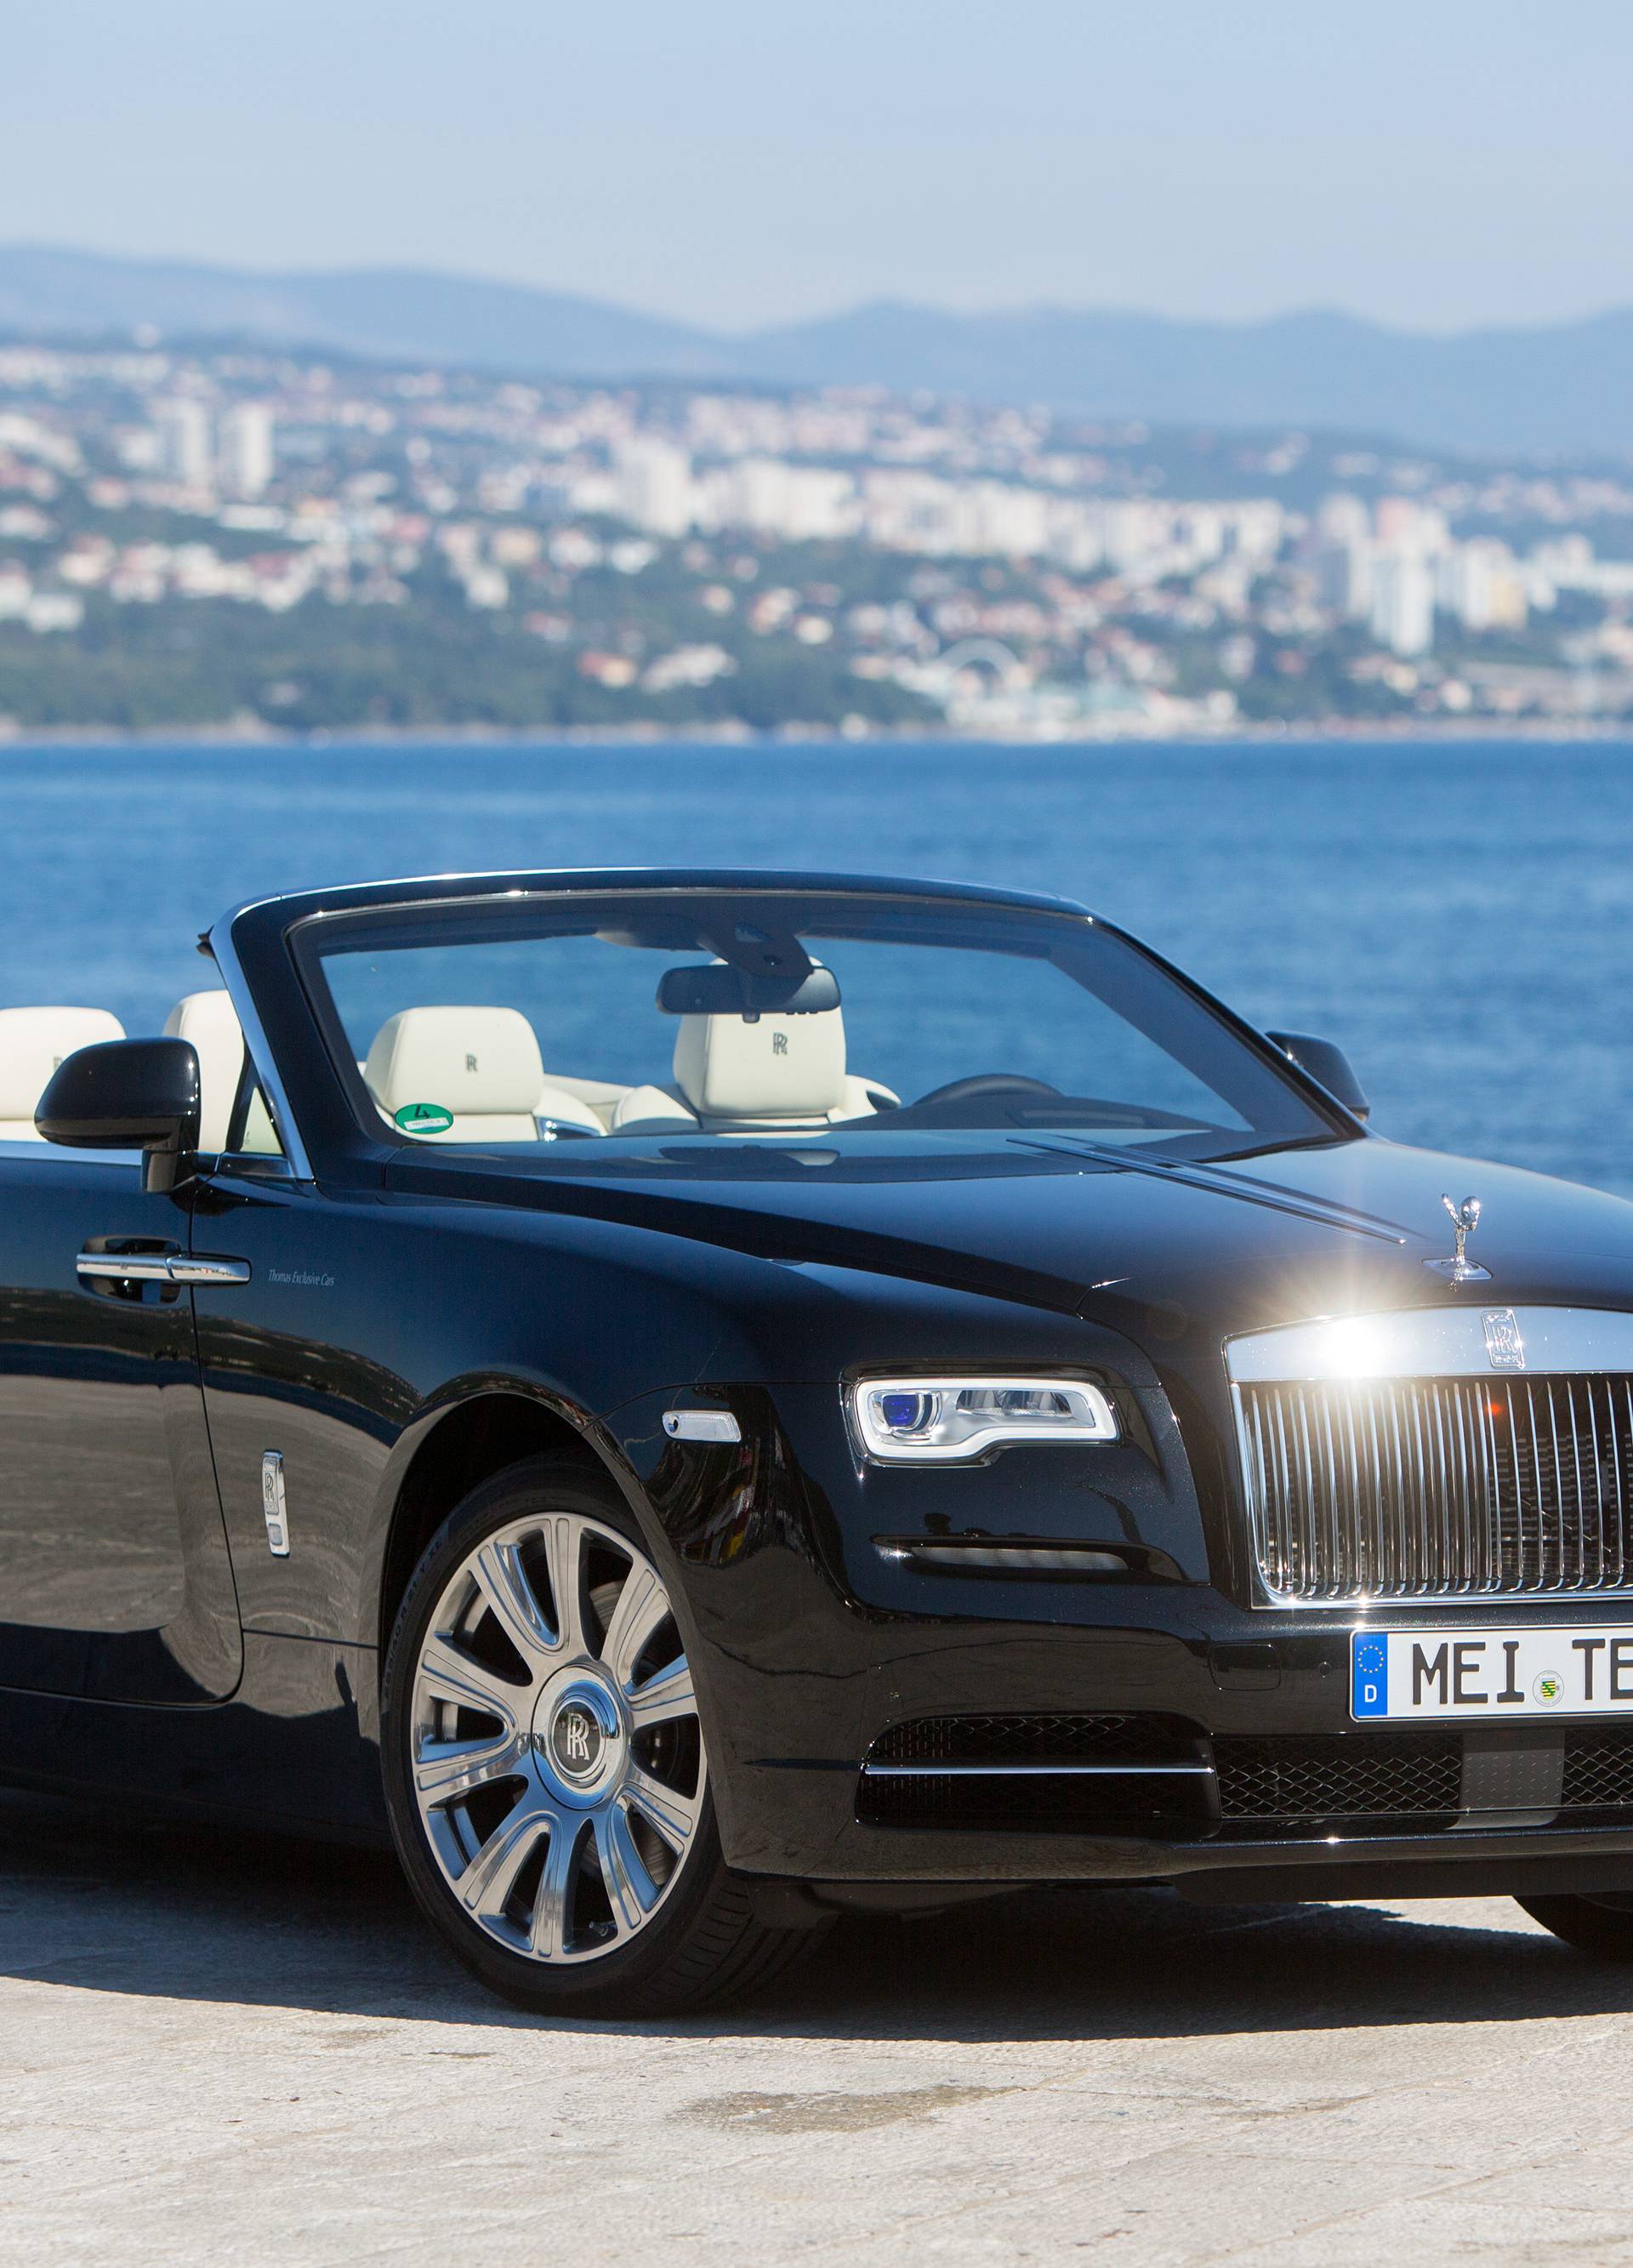 Uz Rolls-Royce smo bili kao pravi kraljevi na tek jedan dan